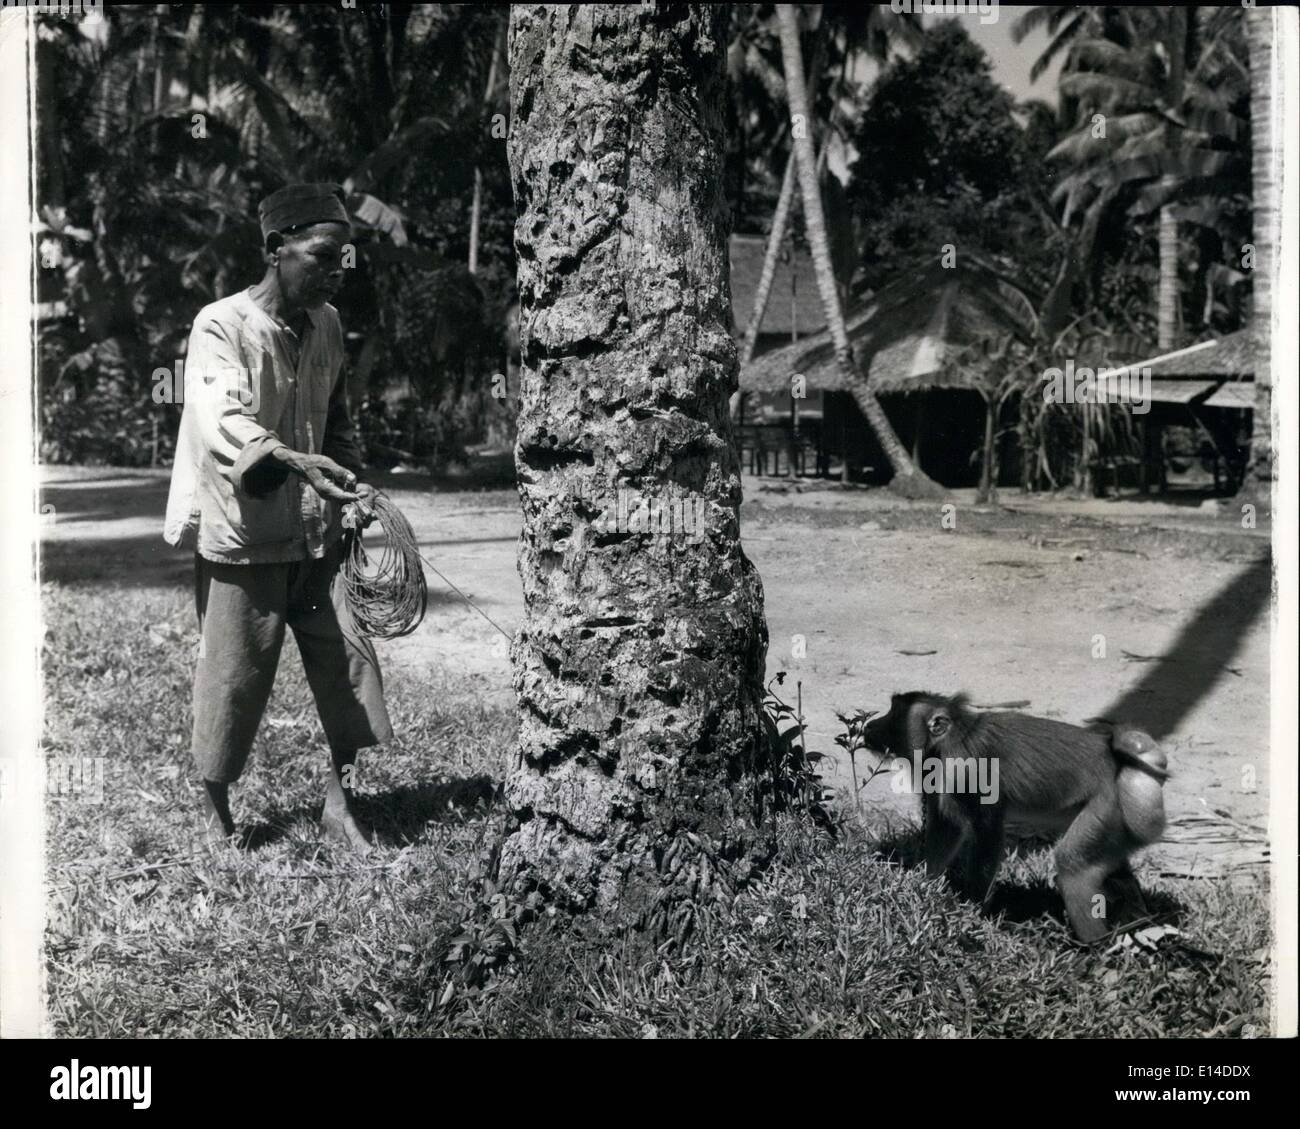 18. April 2012 - Madame Affe Werke für ihr Leben In Sumatra: Als A Coconut Sammler sie verdient A menschliche Arbeitskraft Lohn Sumatra ist eine Insel voller Affen in allen Formen, Farben und Größen. Die Eingeborenen haben lange Vorteil davon genommen und weiblichen Gefangene Affen täglich nützlich für ihren Unterhalt arbeiten zu trainieren. Beste (die einzige in der Tat) Aufgabe eine Affe tun kann ist, verwenden Sie seine Fähigkeiten in Bäume zu klettern, um die Kokosnüsse zu pflücken, die für ihre Kopra verkauft werden. Weibchen können nur für diese Arbeit ausgebildet werden, da die Männchen der Spezies zu heftig ist Stockfoto